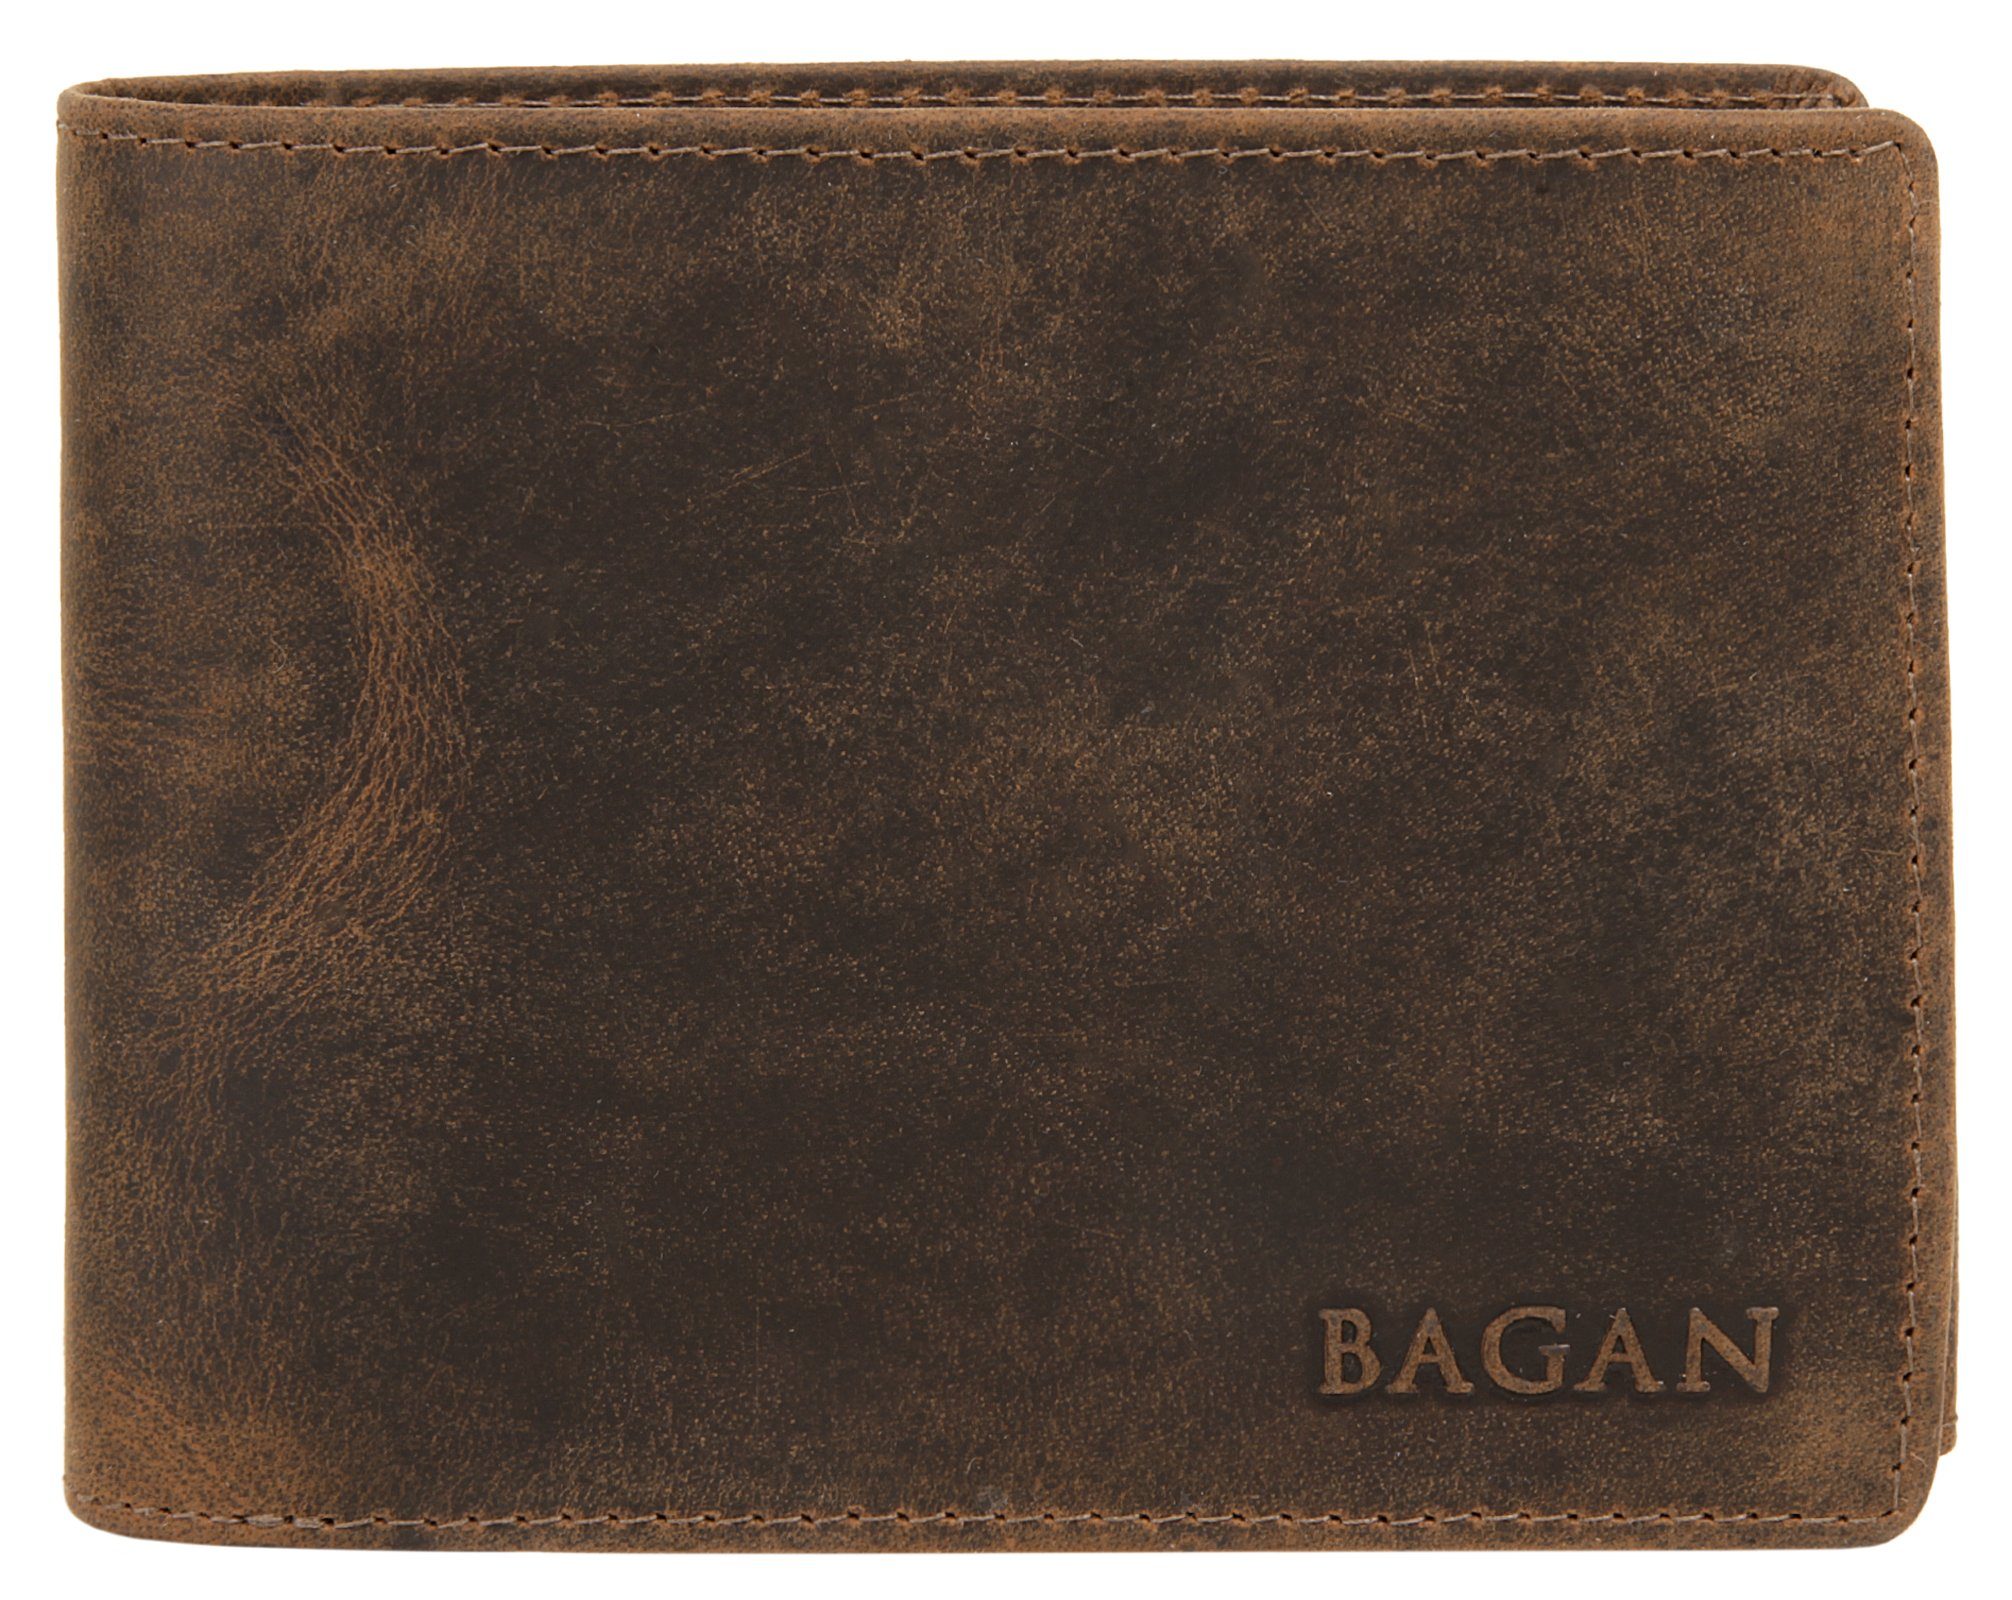 12 Bagan 1 & Leder, 3 2 Geldbörse, echt Sicht- Einsteck-, 3 Schein-, Münzfach Karten-,